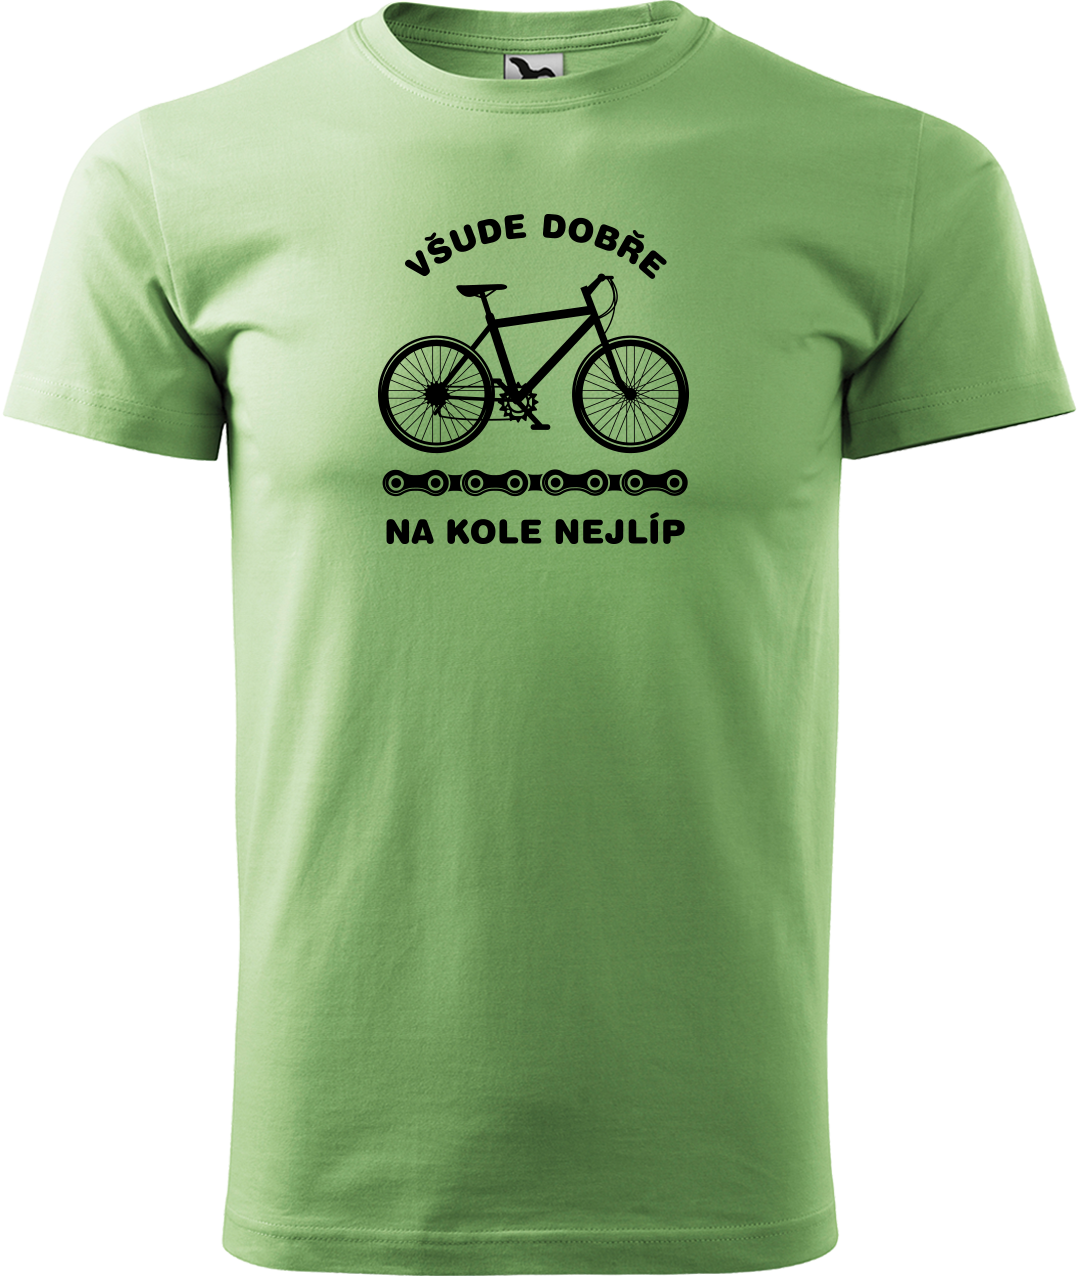 Pánské tričko s kolem - Všude dobře, na kole nejlíp Velikost: M, Barva: Trávově zelená (39)